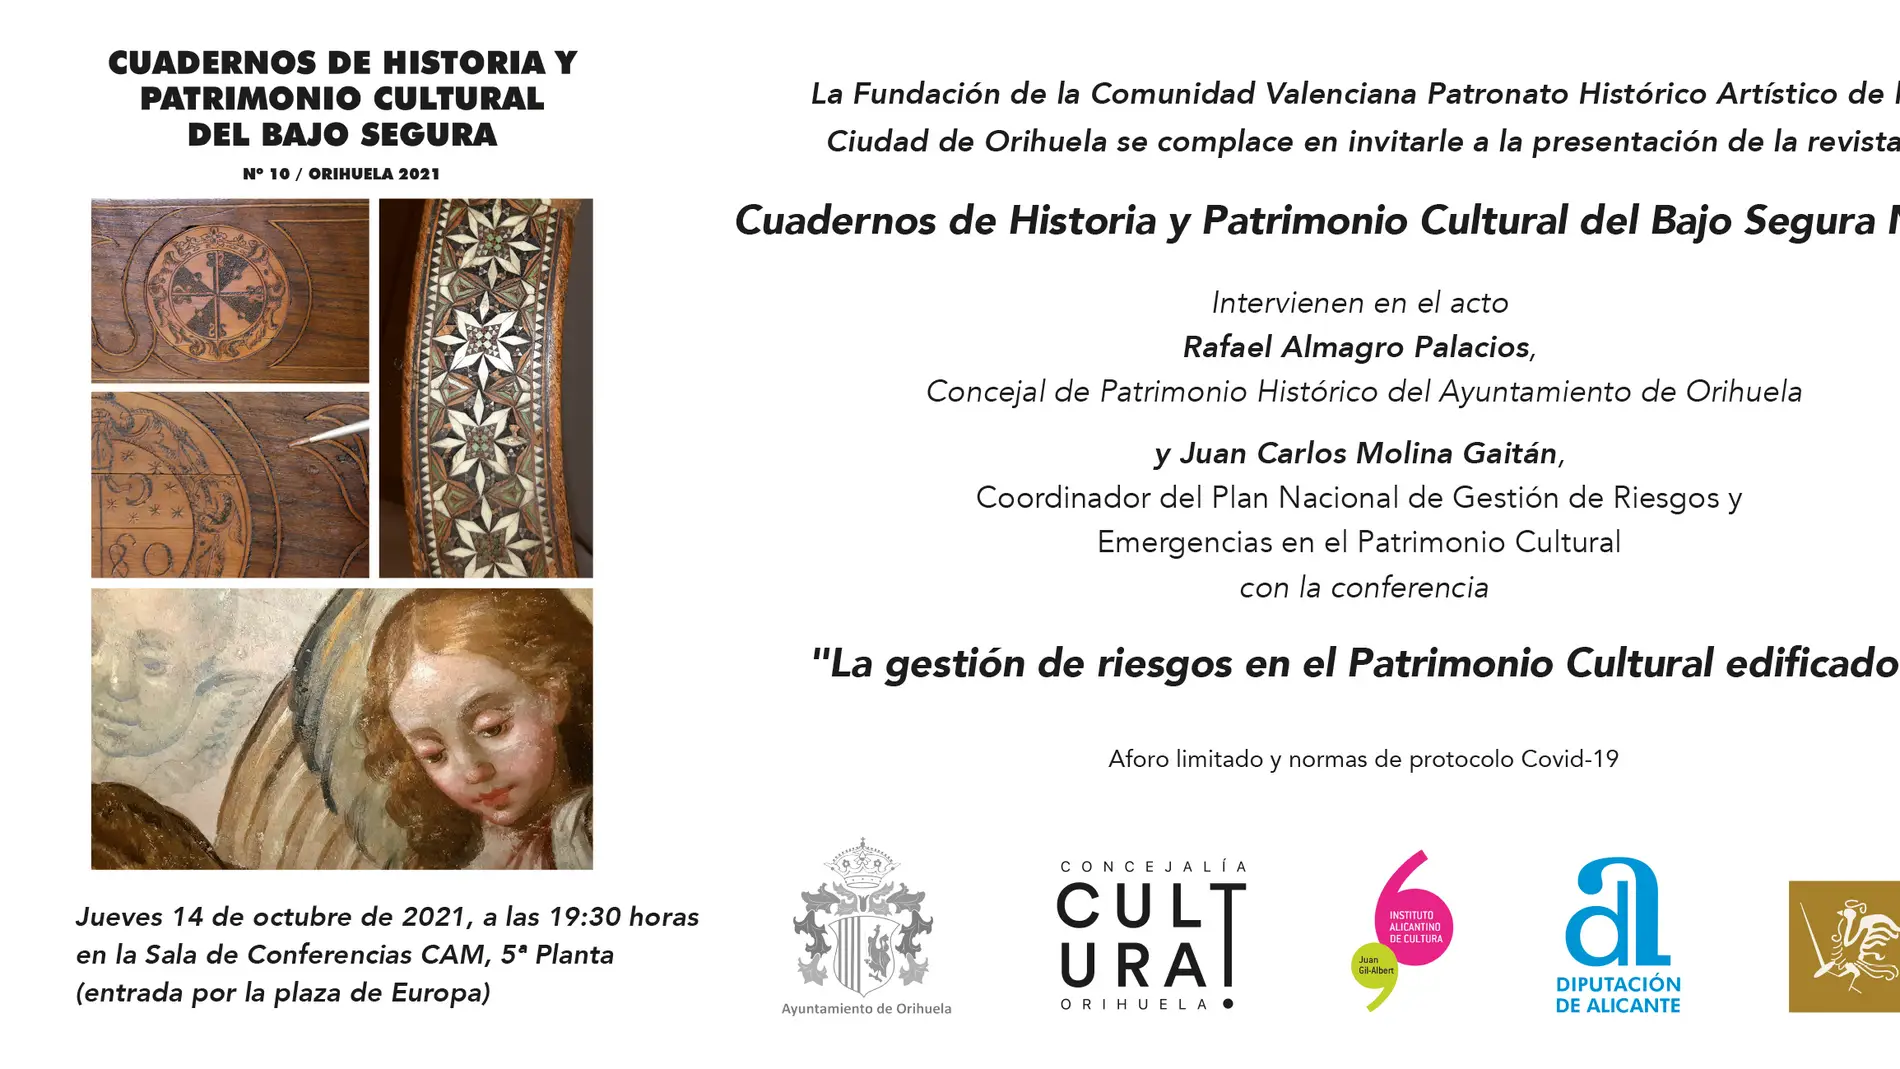 "Cuadernos de Historia y Patrimonio Cultural del Bajo Segura" 14 de octubre Sala de Conferencias de la CAM